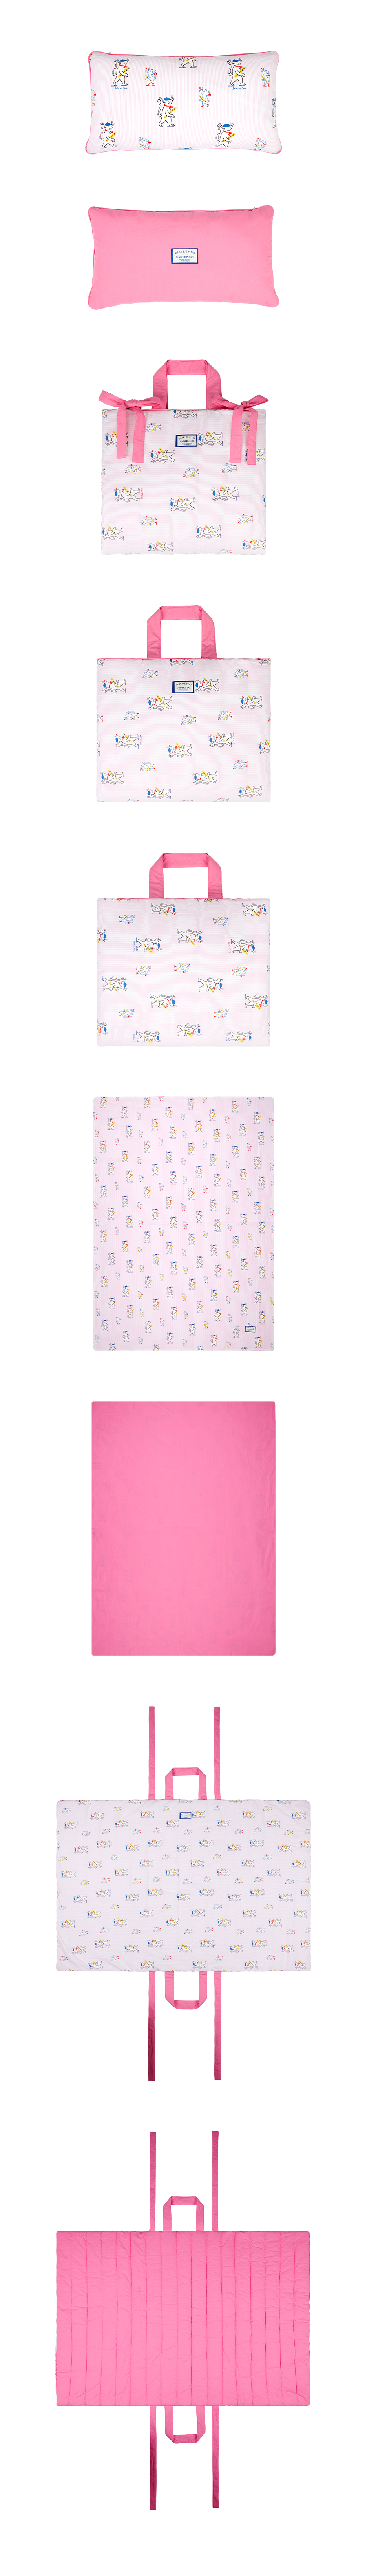 Paris pink mouse bedding set Details